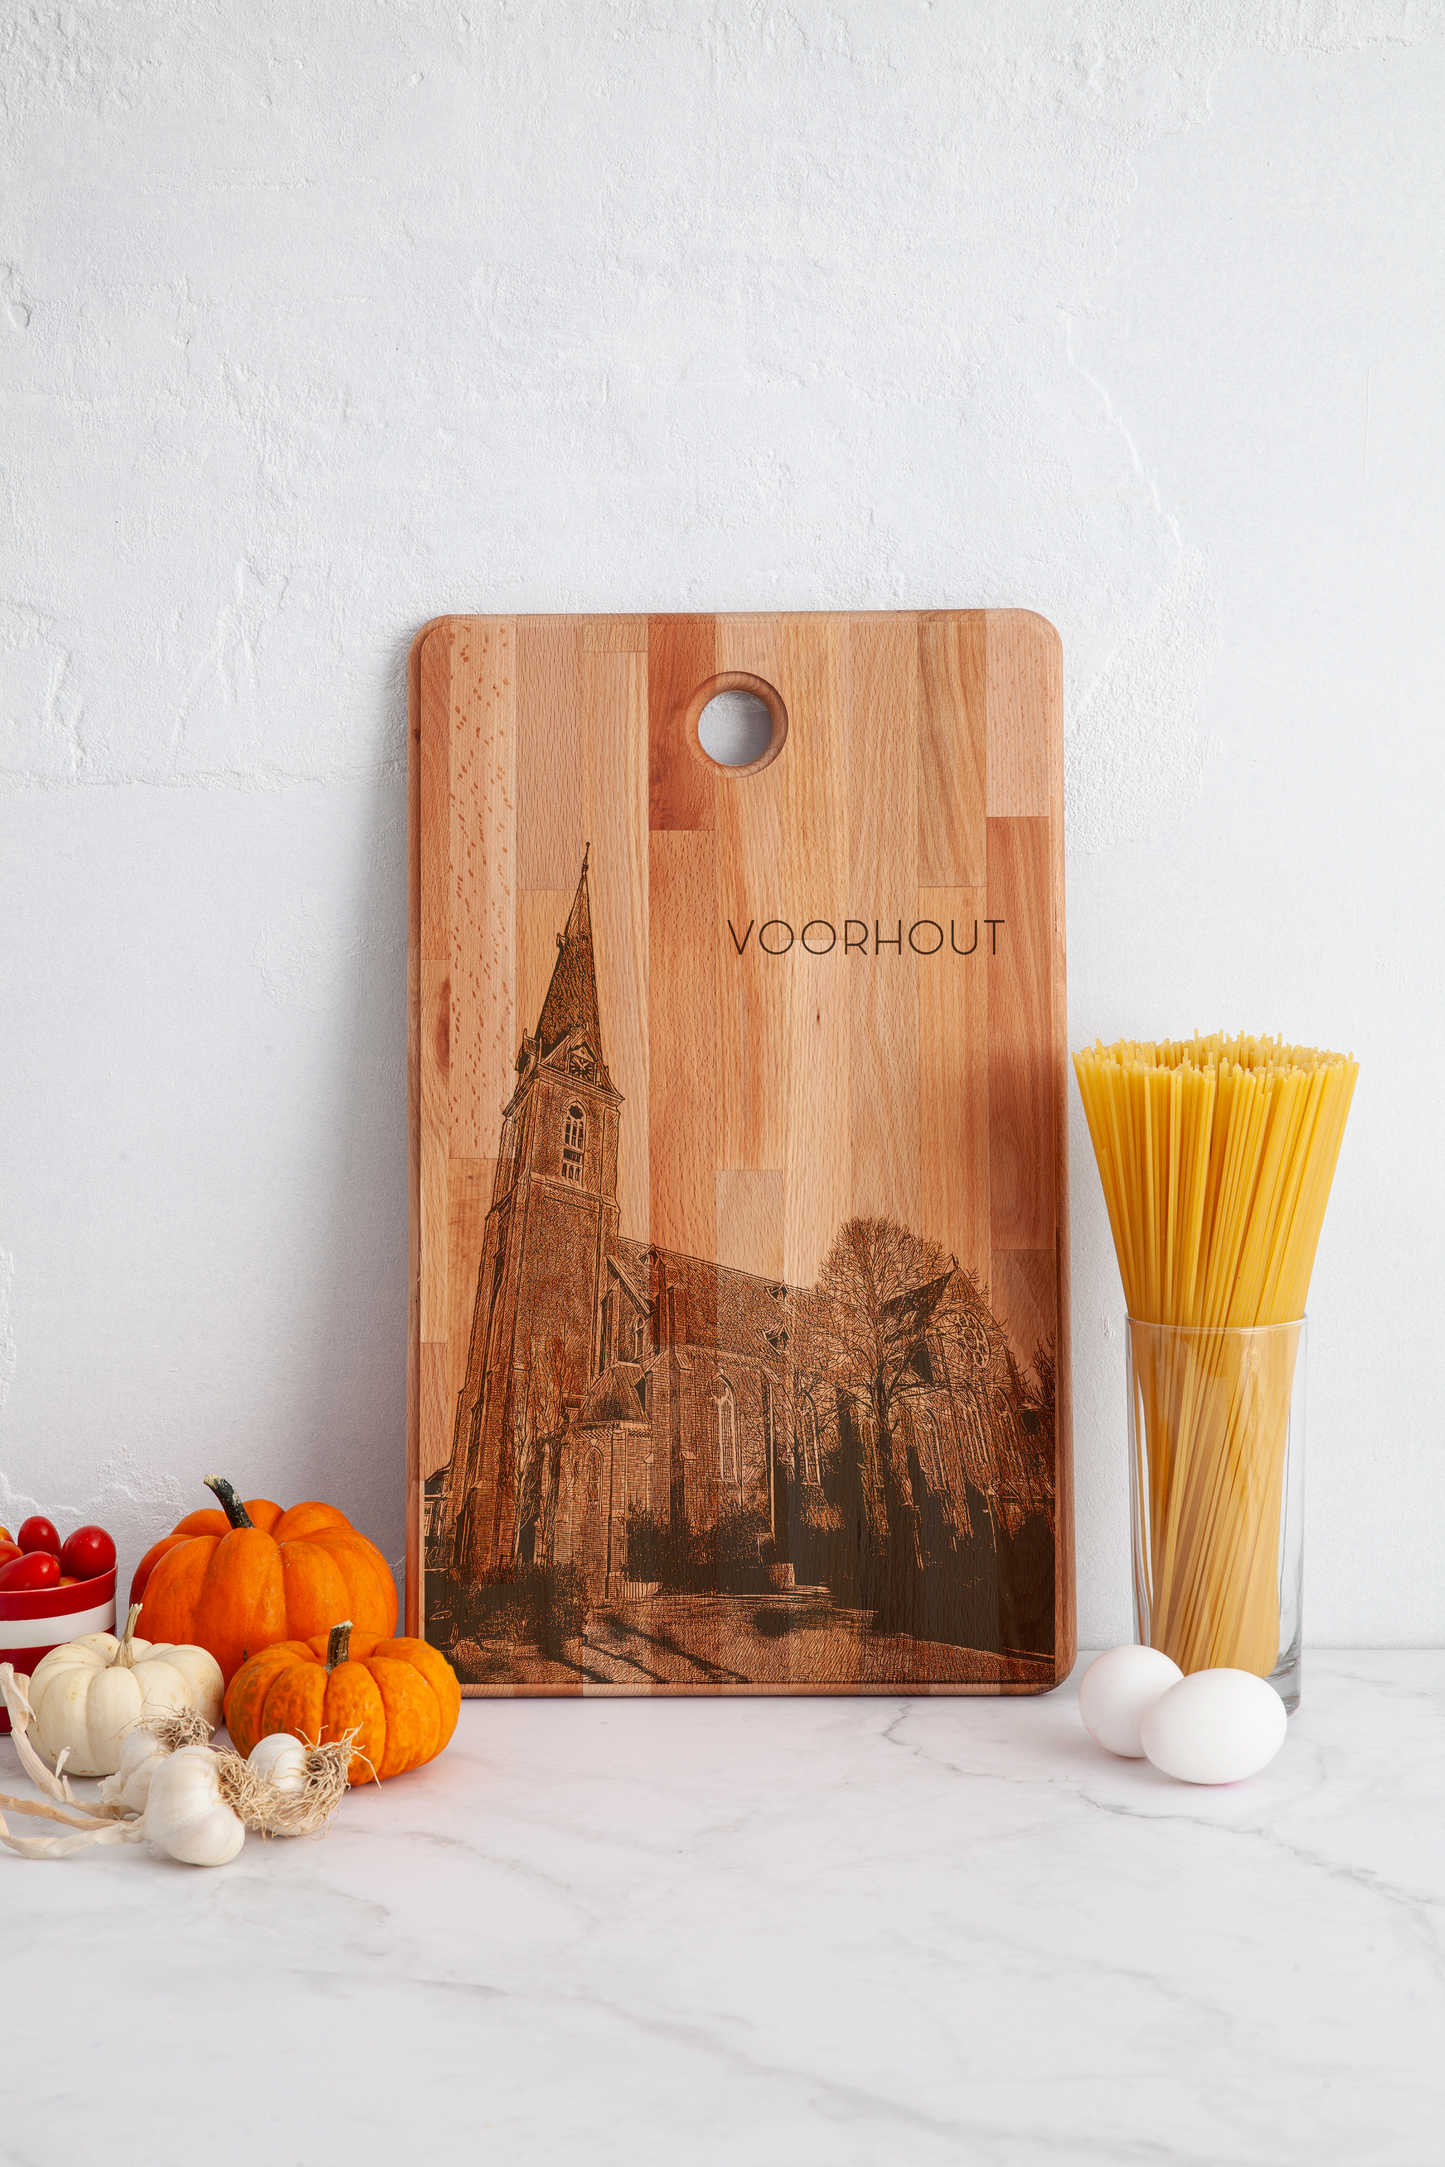 Voorhout, De Sint Bartholomeuskerk, cutting board, in kitchen